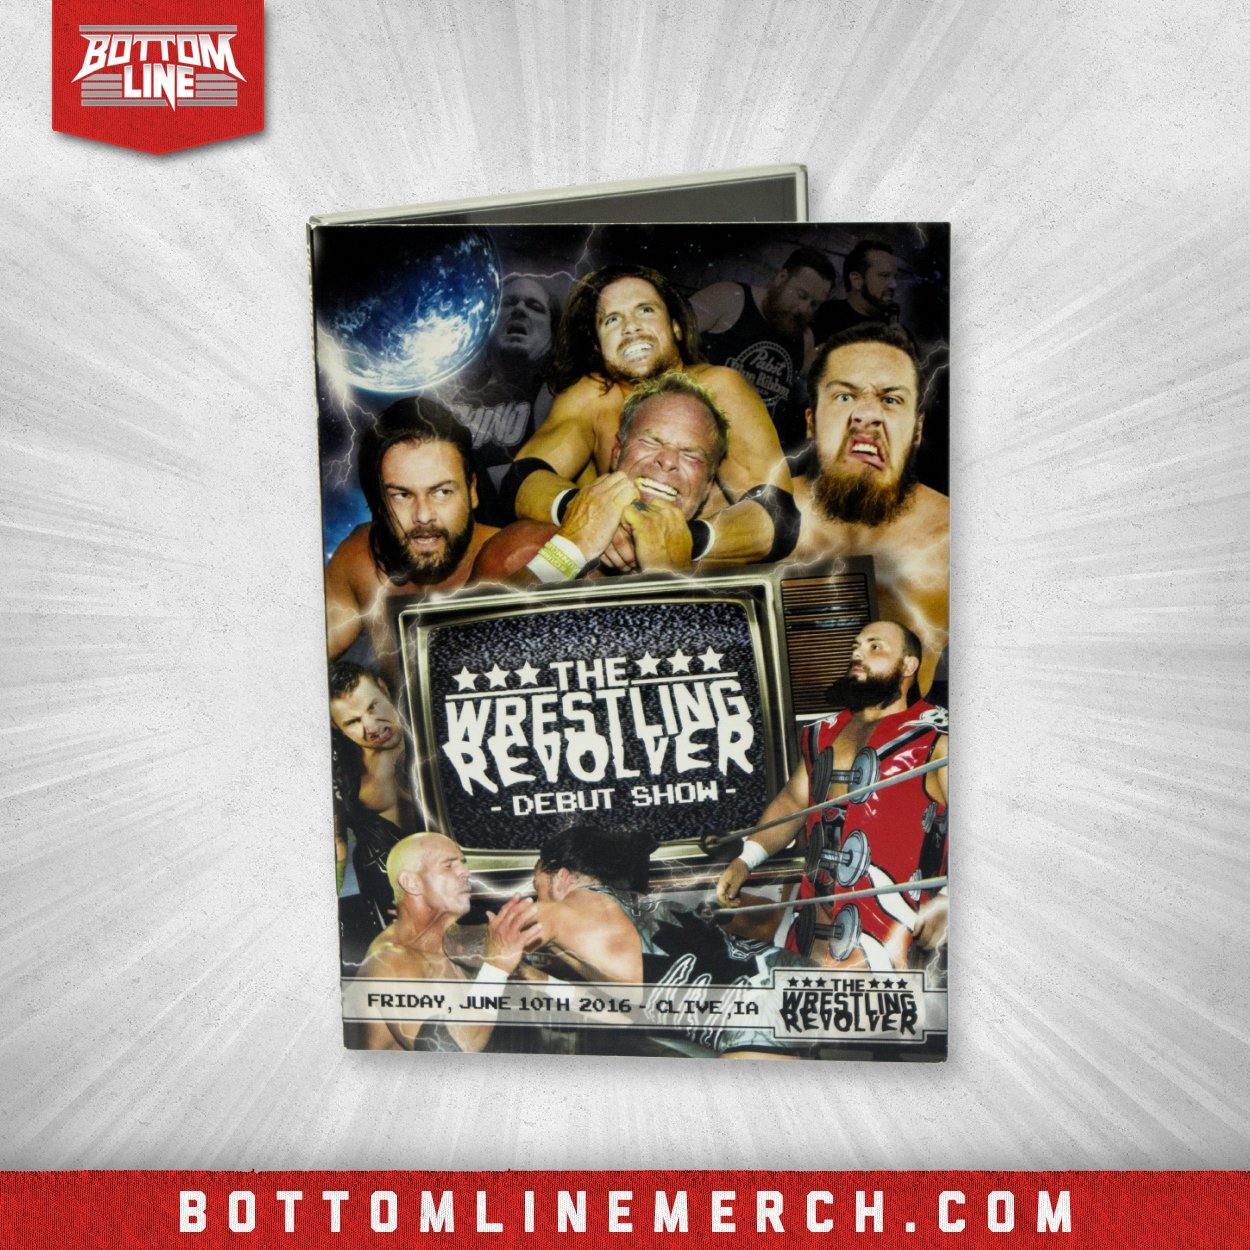 Buy Now – The Wrestling Revolver "Debut Show" DVD (06/10/2016) – Wrestler & Wrestling Merch – Bottom Line